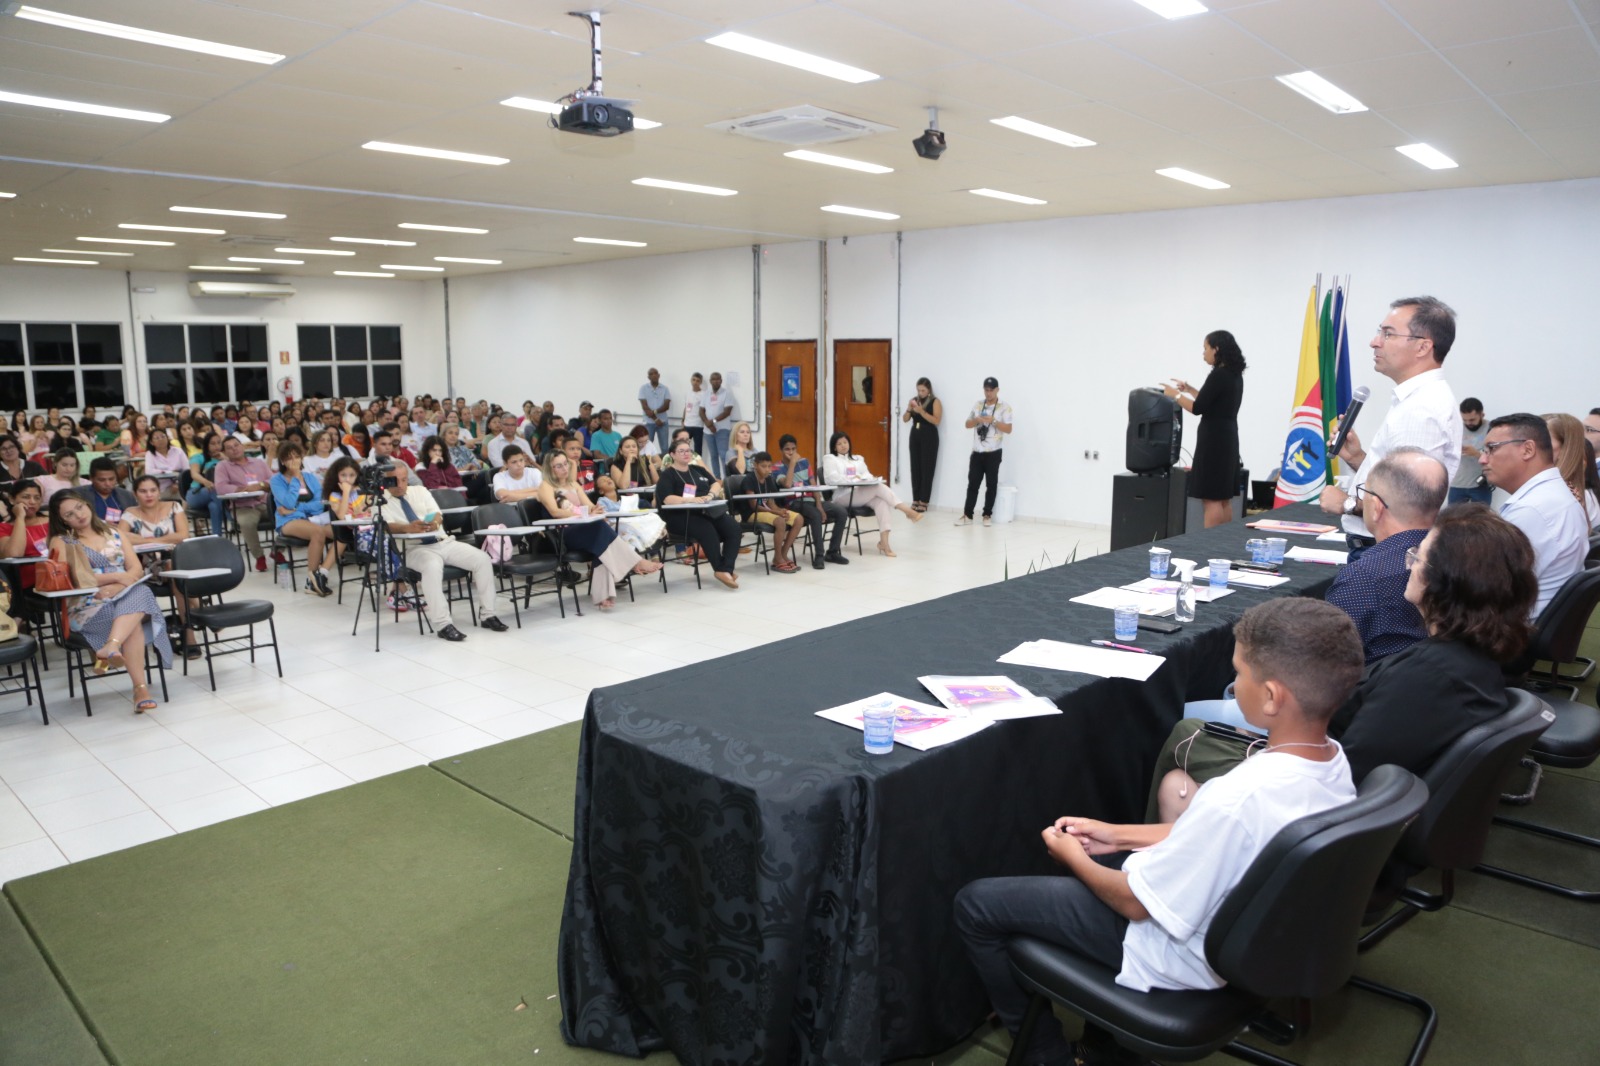 O objetivo da conferência foi reunir representantes da sociedade para o debate e busca de novas estratégias que diminuam os impactos da pandemia da covid-19 na garantia dos direitos à criança e ao adolescente (Foto: Marcos Sandes Filho)